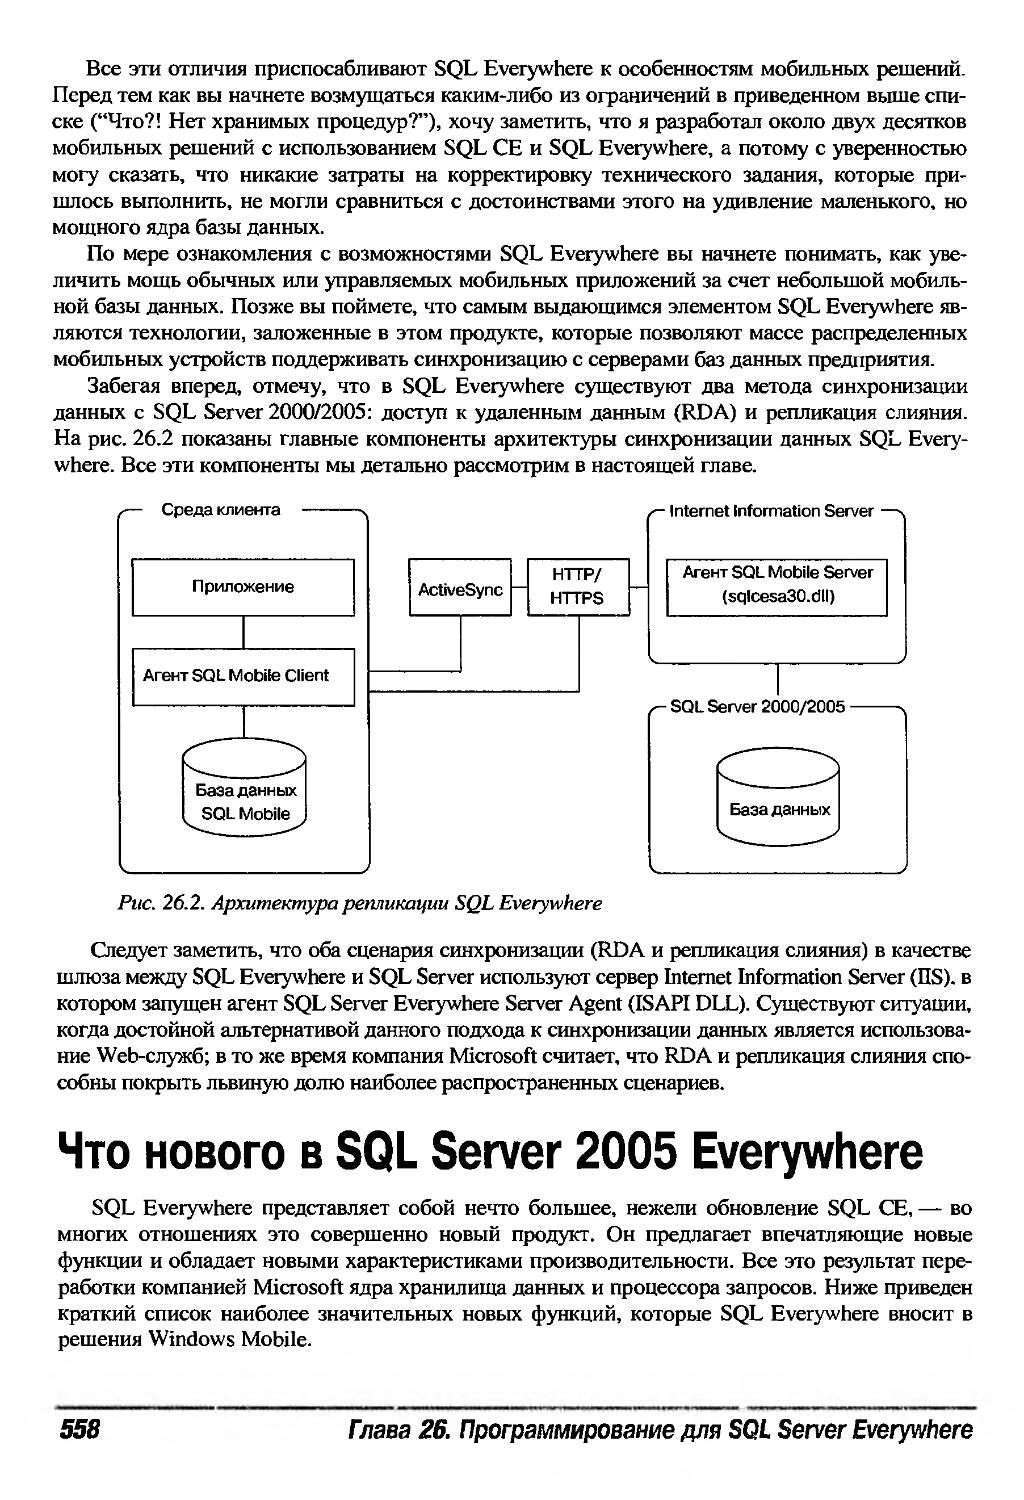 Что нового в SQL Server 2005 Everywhere